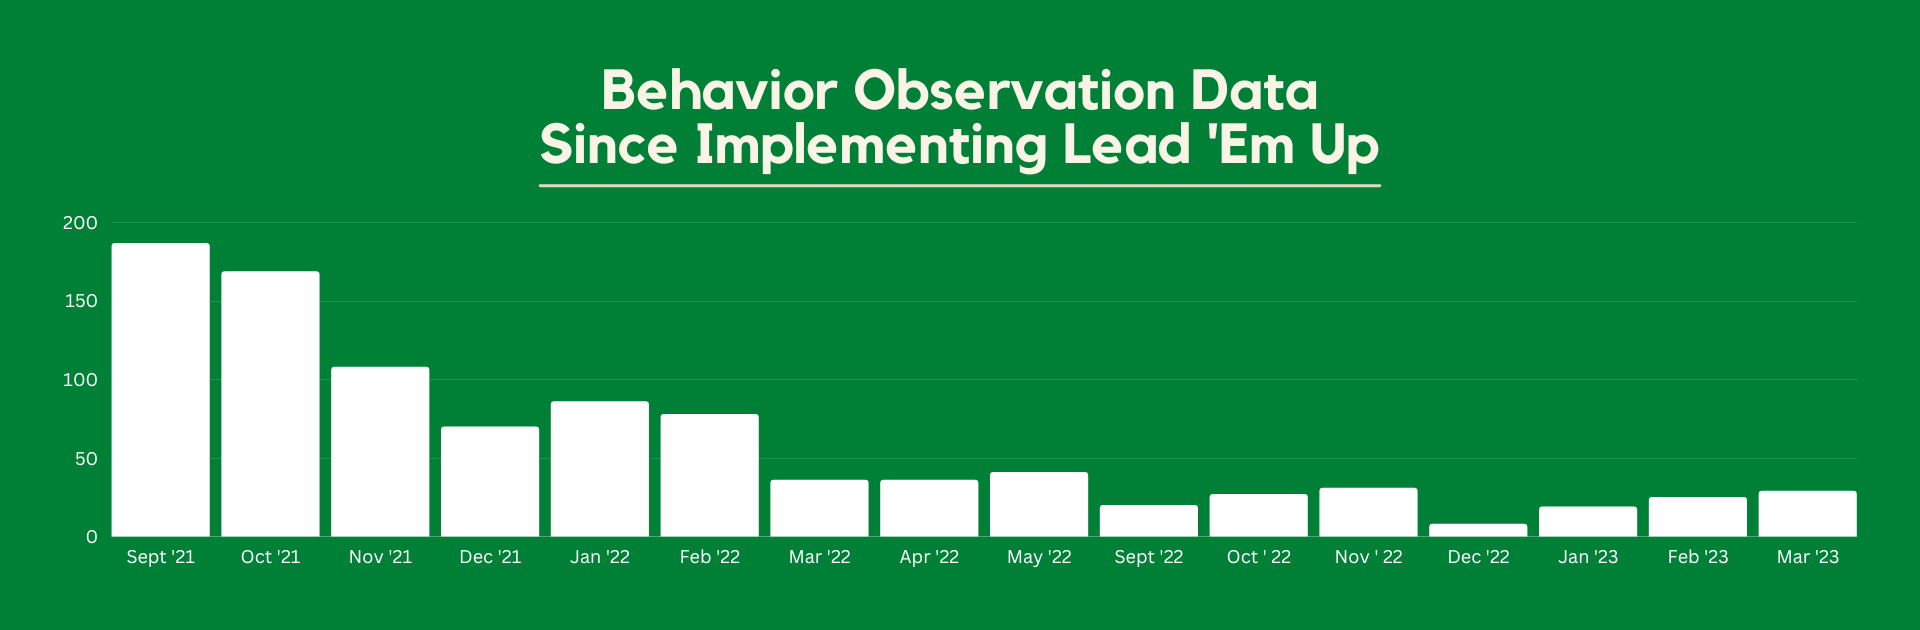 Behavior Observation Data Since Implementing Lead 'Em Up